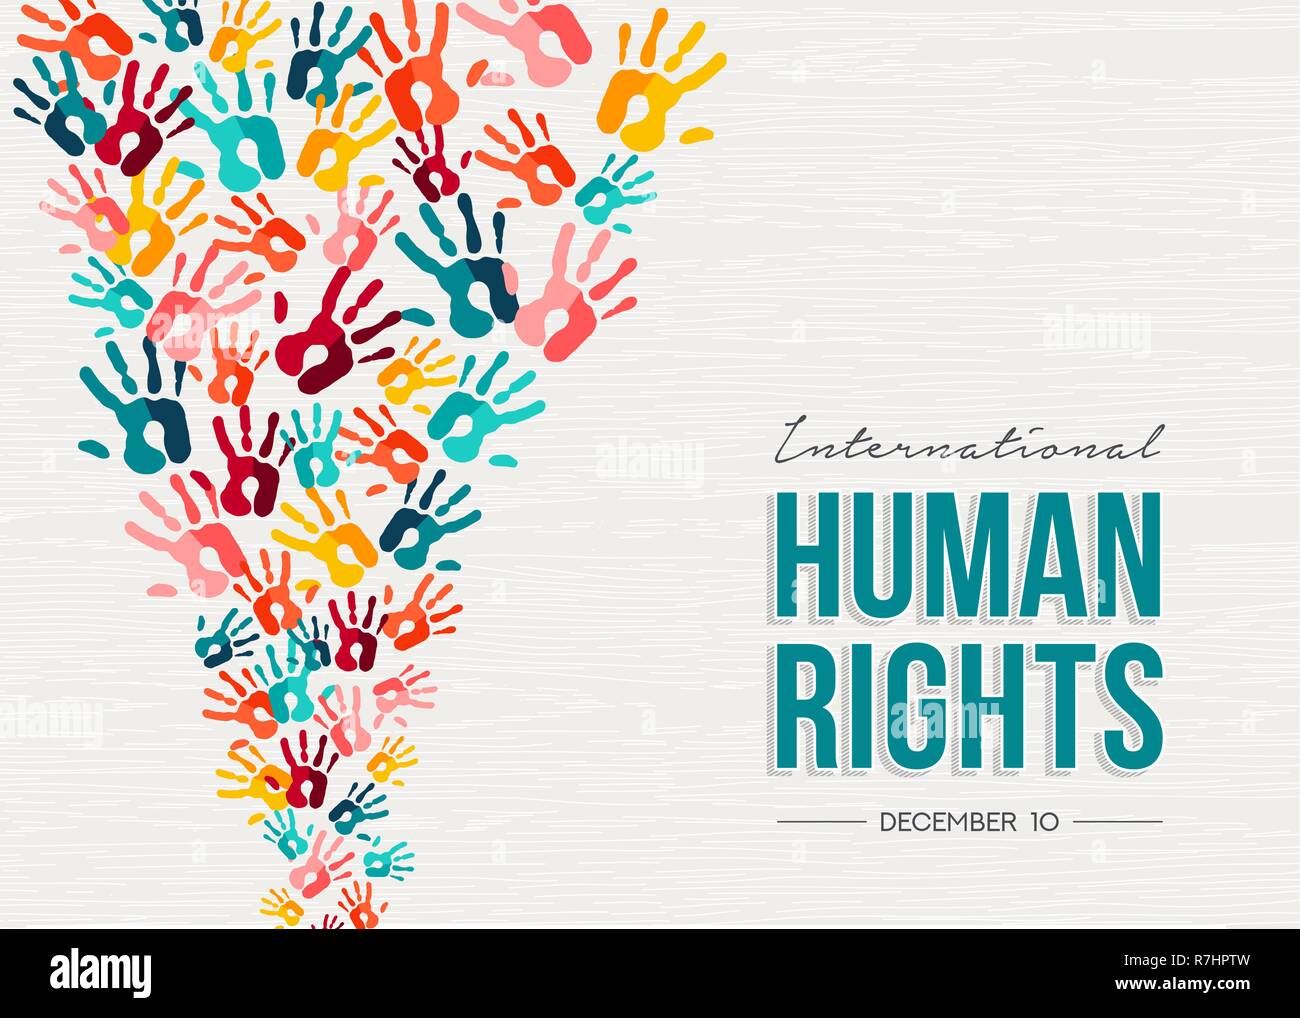 La journée internationale des droits de l'illustration pour l'égalité et de la paix mondiale avec les gens de couleur imprime à la main, de la diversité sociale concept. Illustration de Vecteur